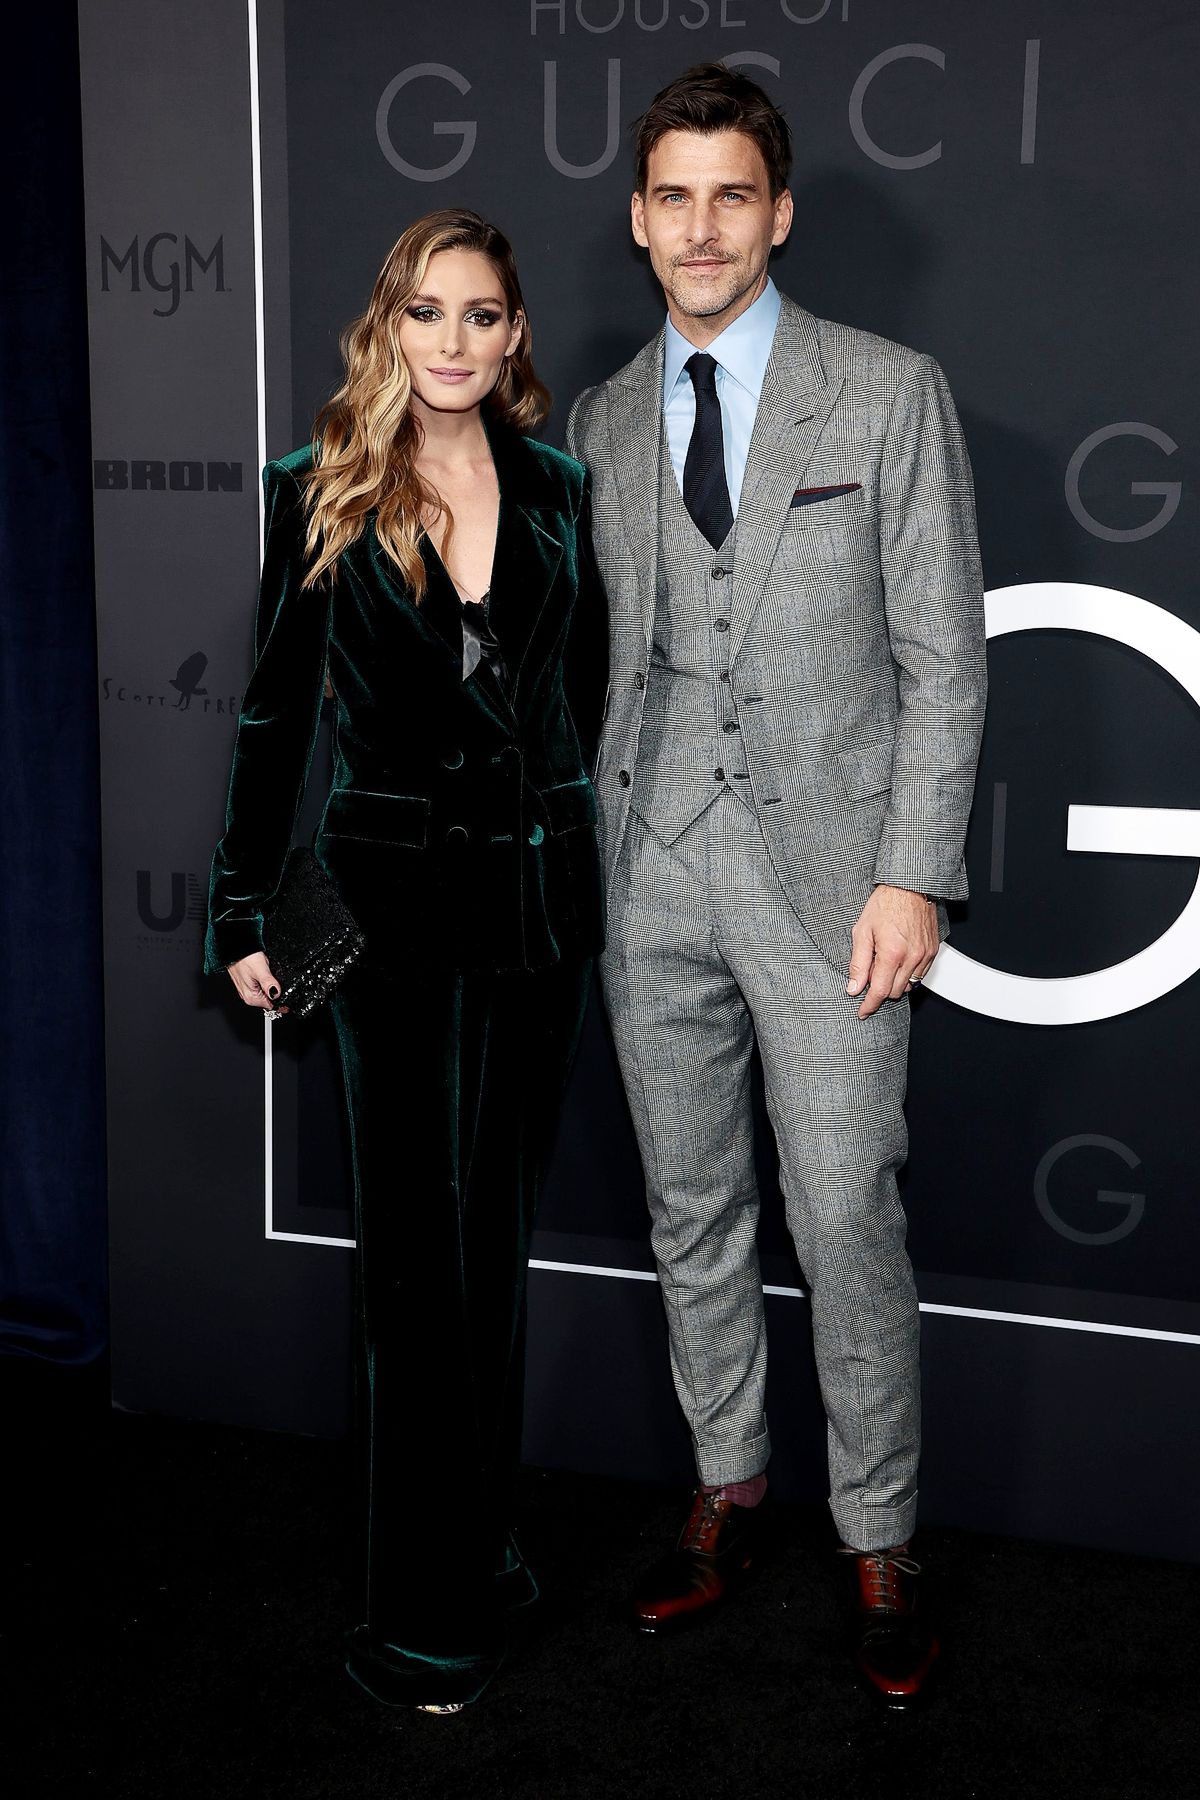 Оливия Палермо и Йоханнес Хюбл на нью-йоркской премьере фильма «Дом Gucci»